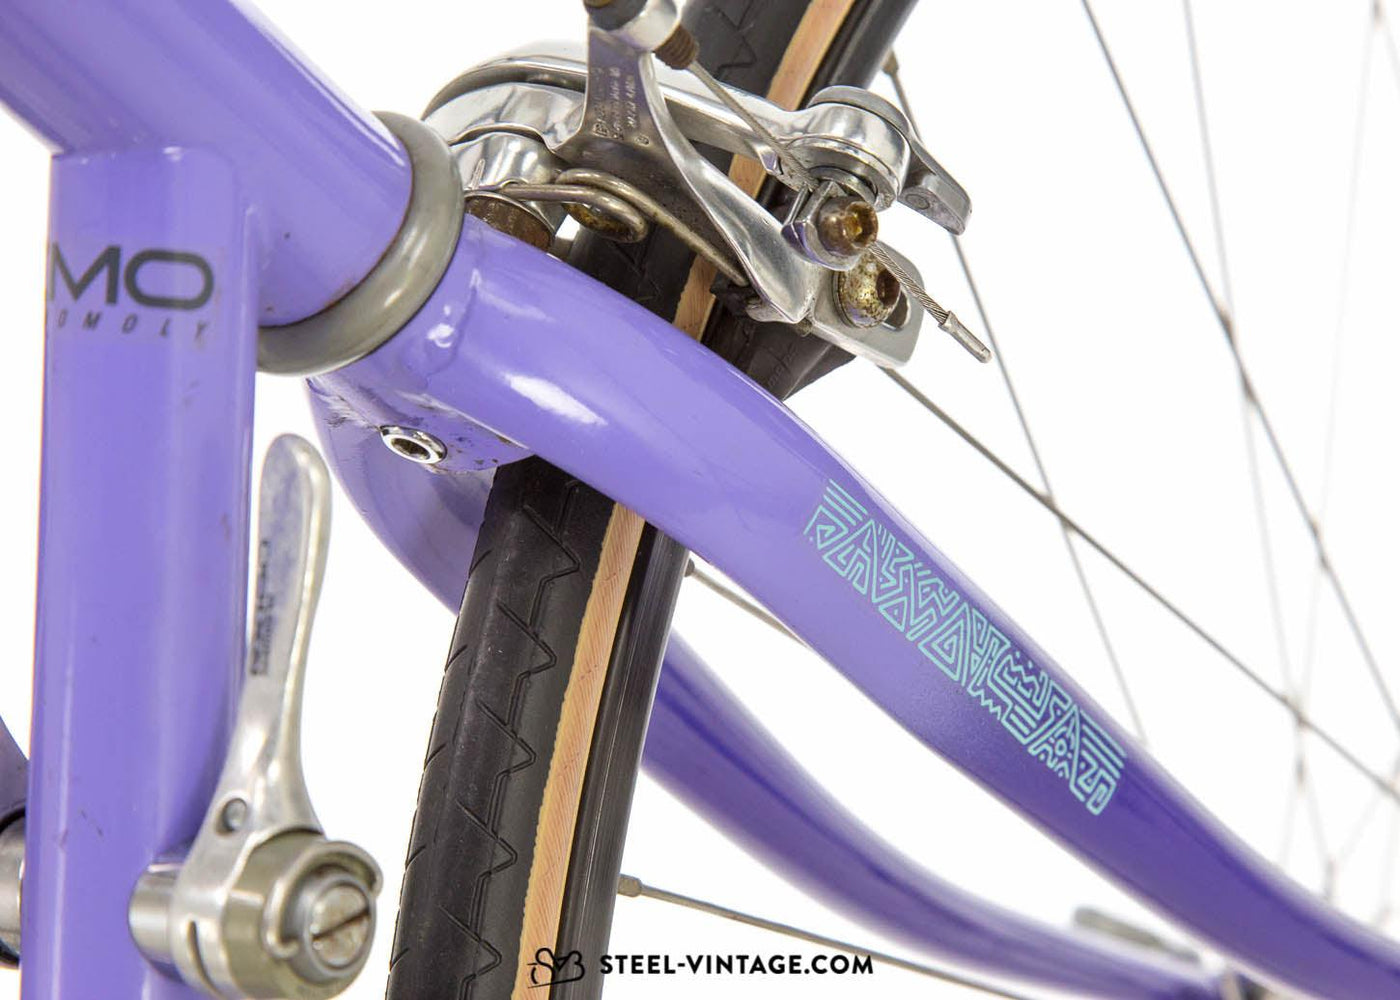 Peugeot CAD PBS Vintage Road Bicycle 1990s - Steel Vintage Bikes